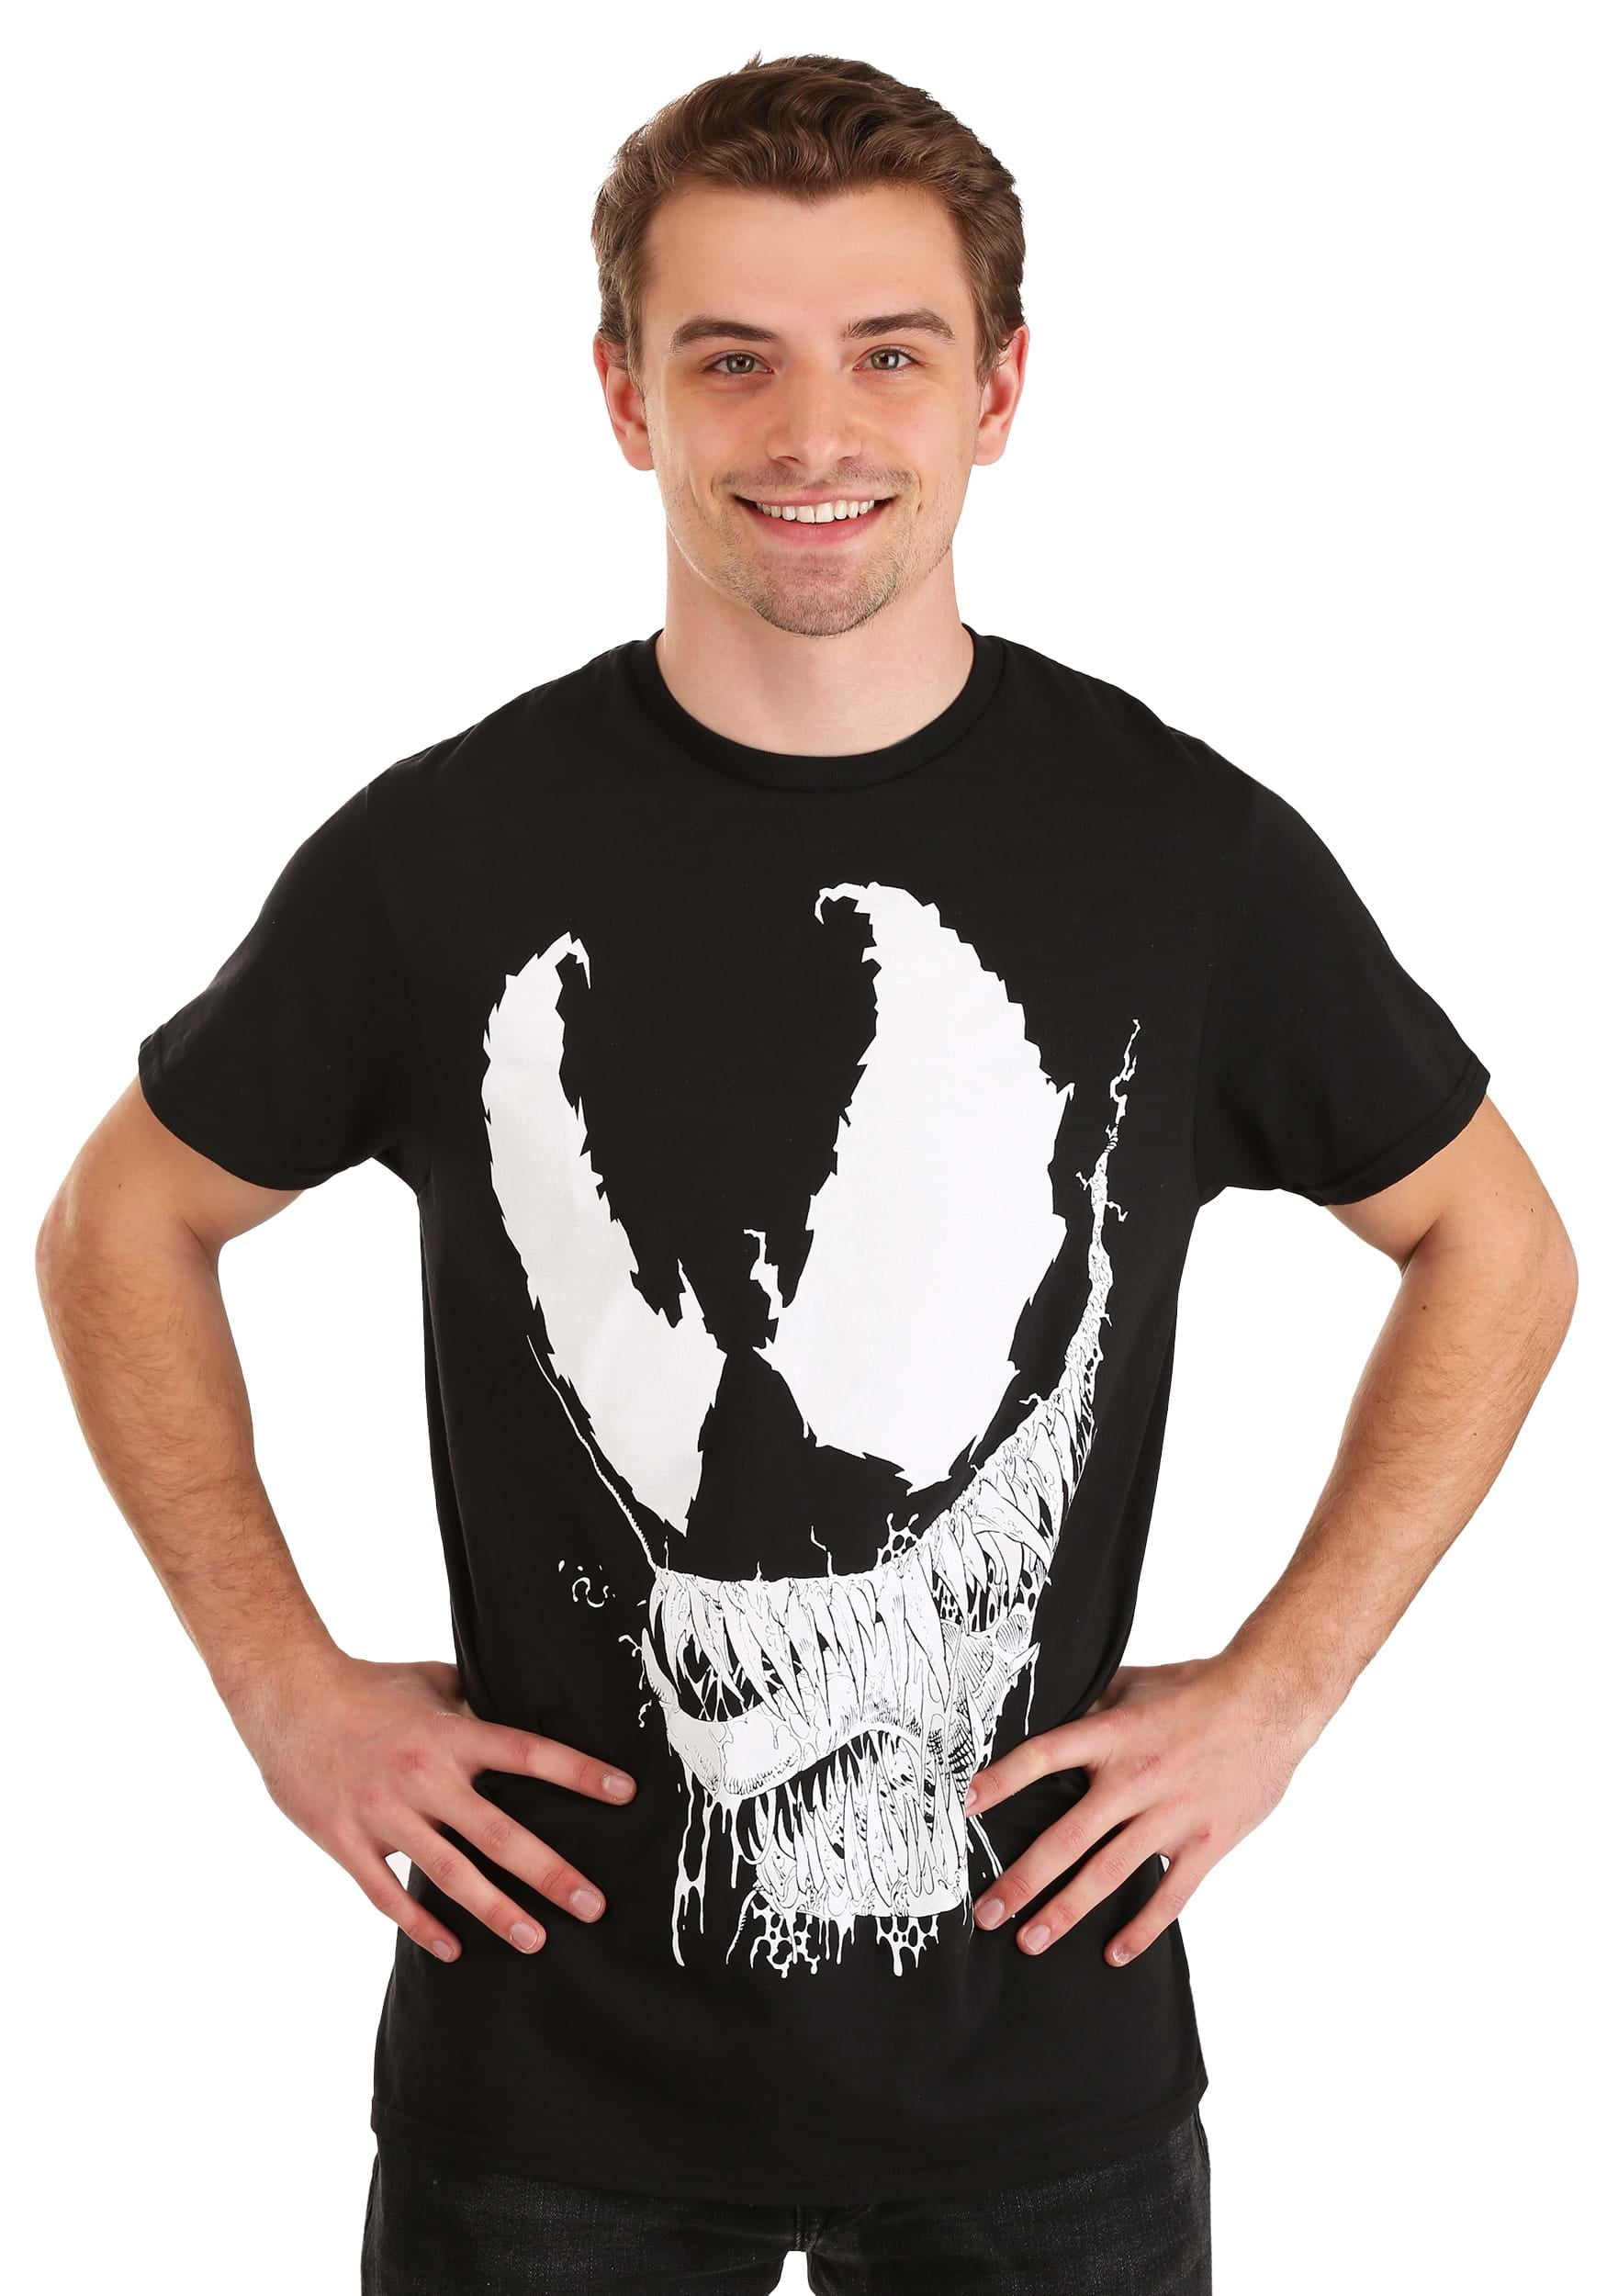 XL-3XL Official Marvel 'Venom's Face' Comic Book Art 100% Cotton T-Shirt Size 